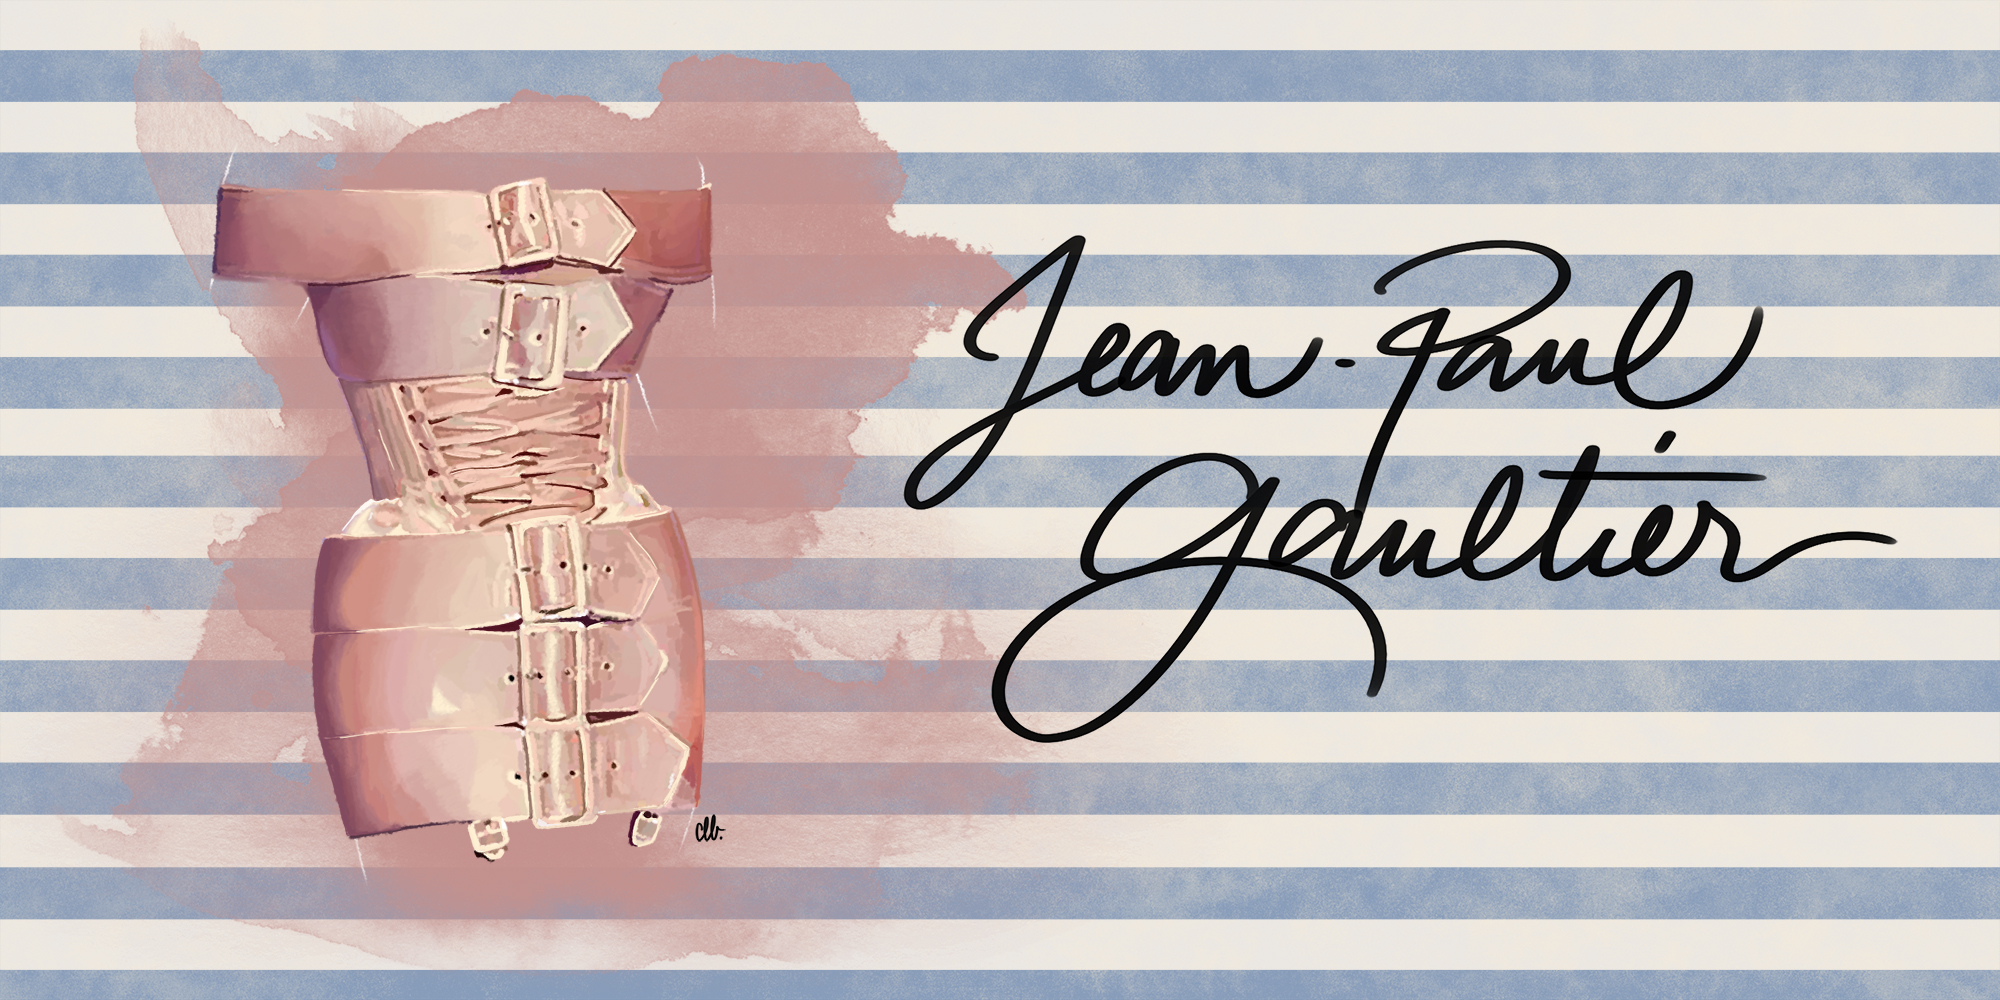 jean-paul gaultier